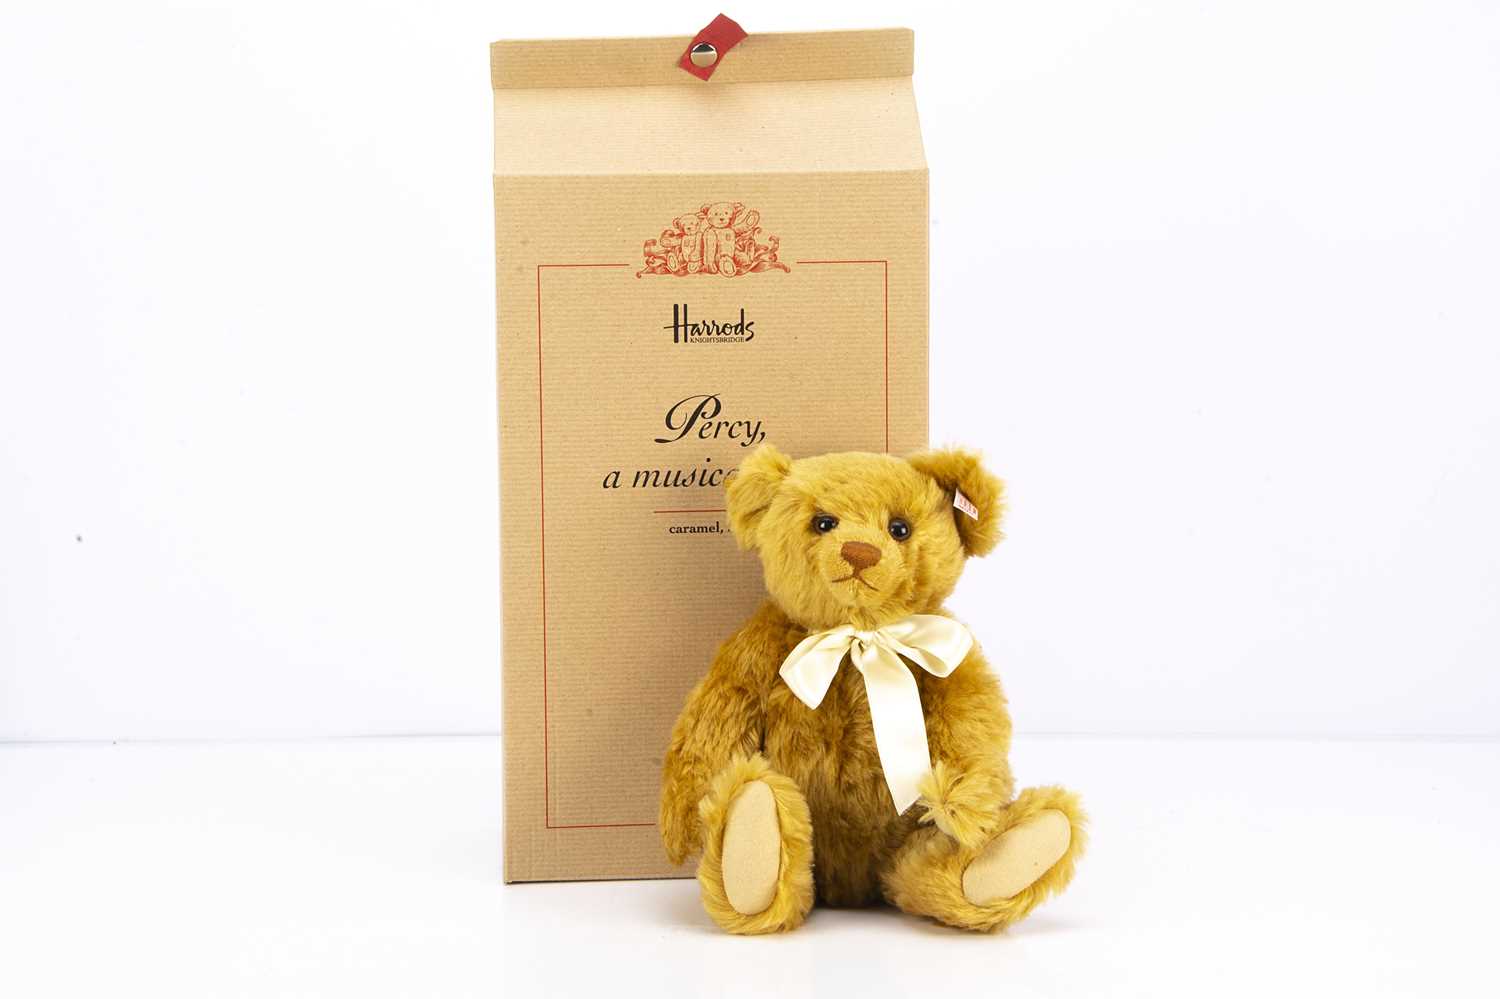 A Steiff limited edition Harrods Percy a musical teddy bear 2003,